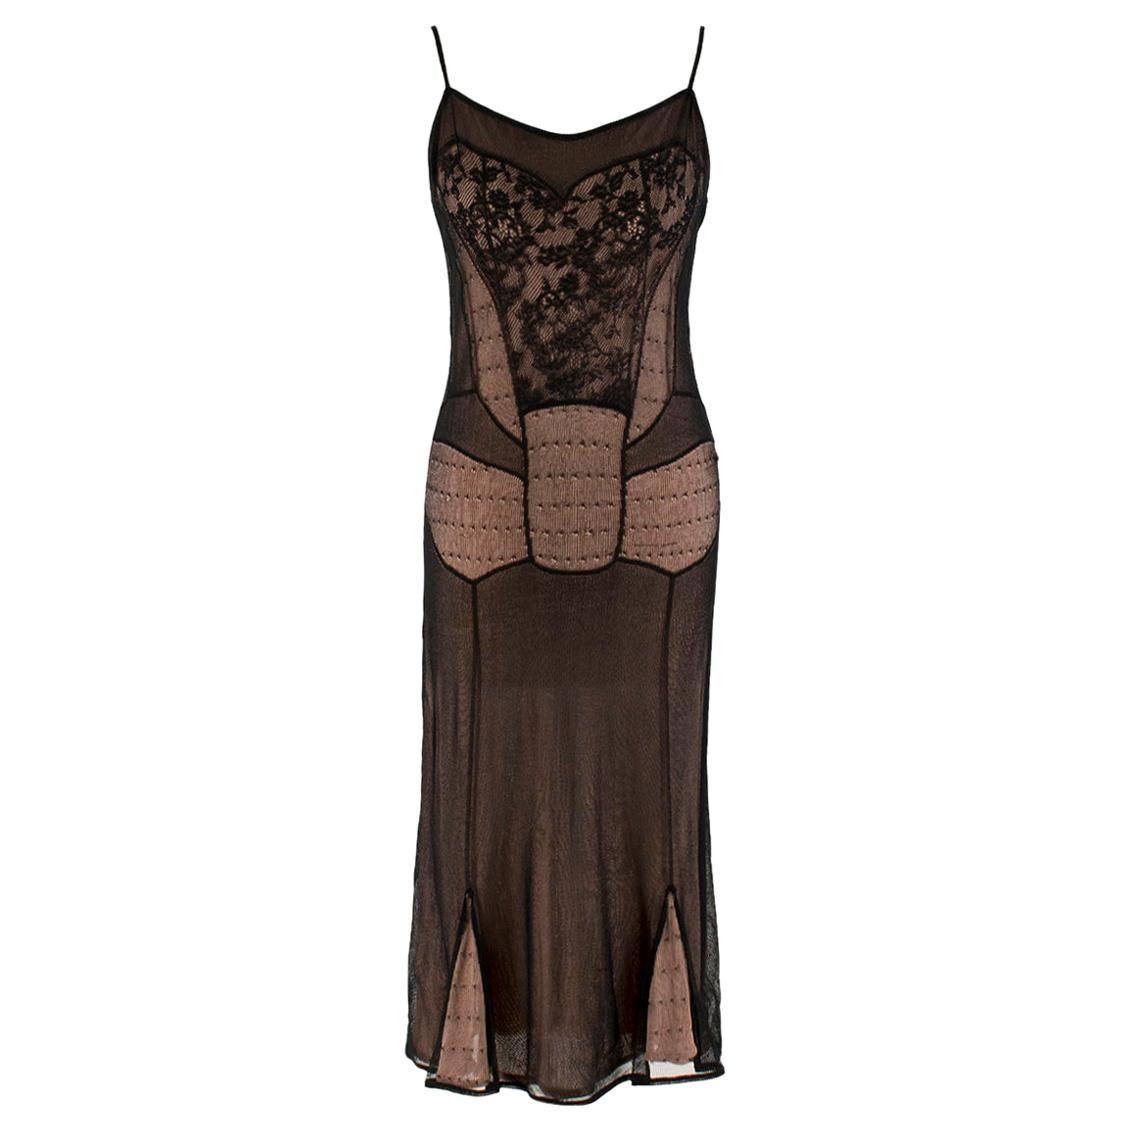 Christian Dior Boutique Black & Nude Lace Dress - Size L